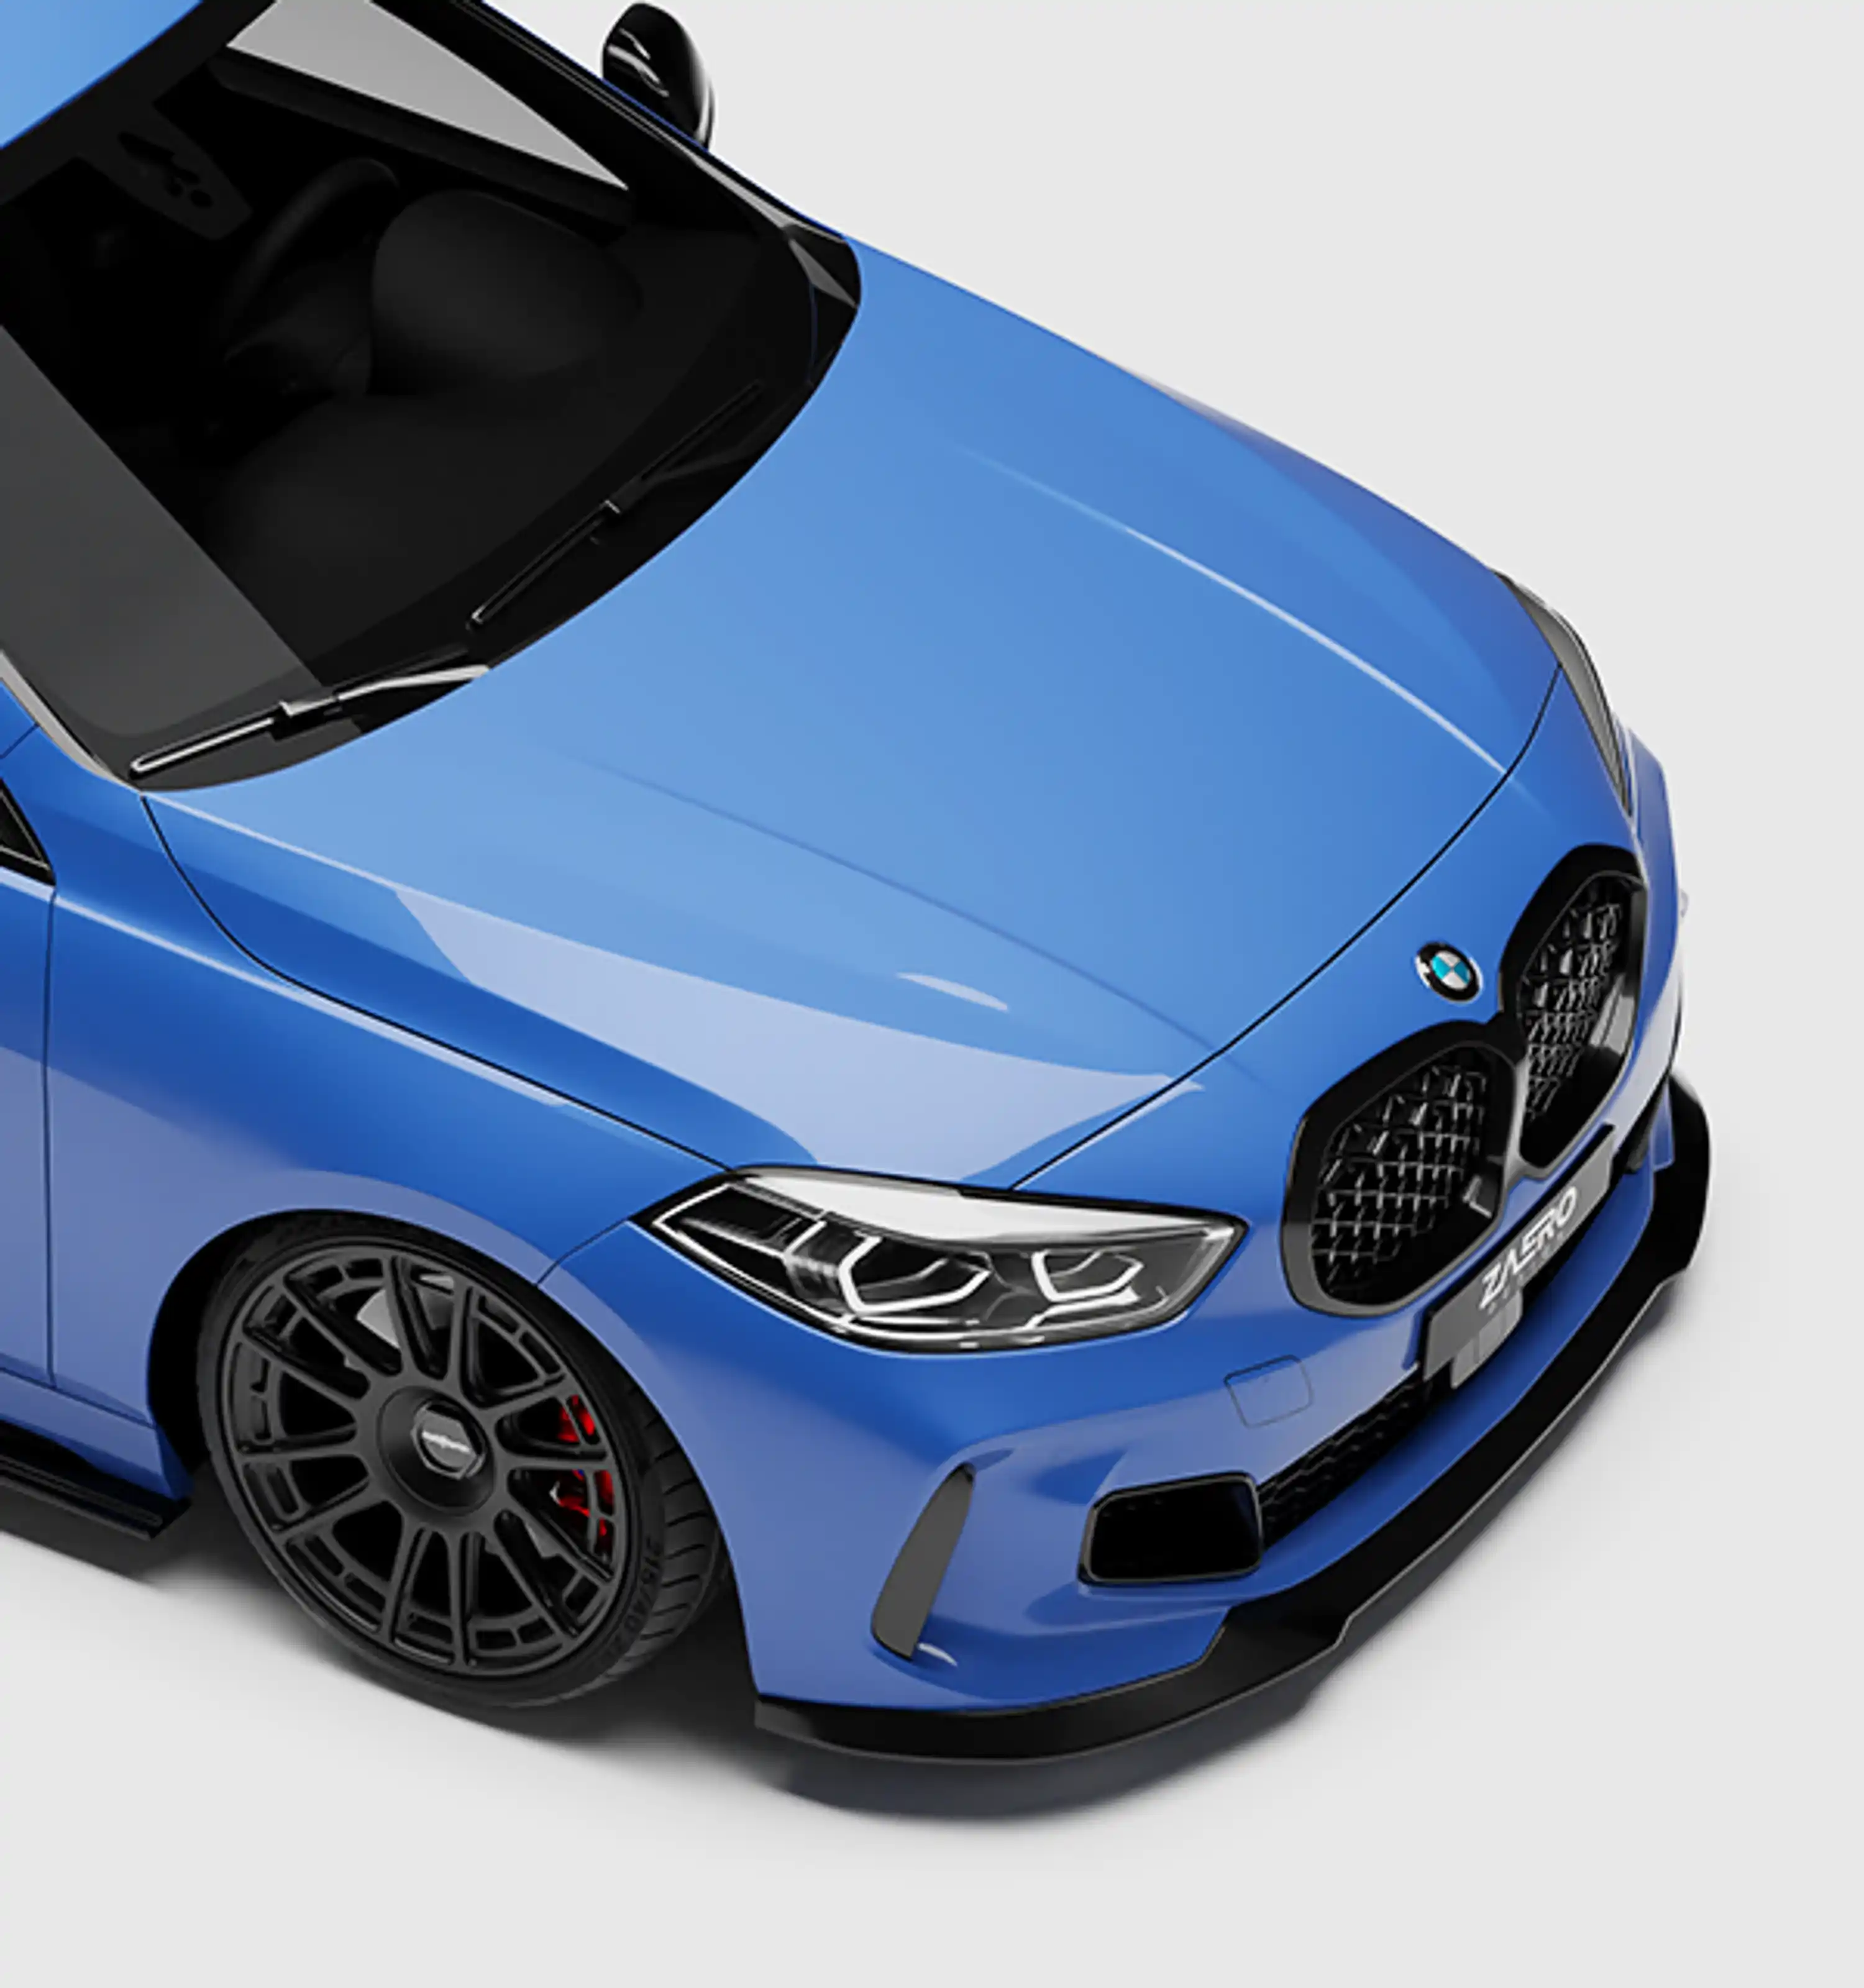 Frontspoilerlippe von ZAERO DESIGN für BMW 1er F40